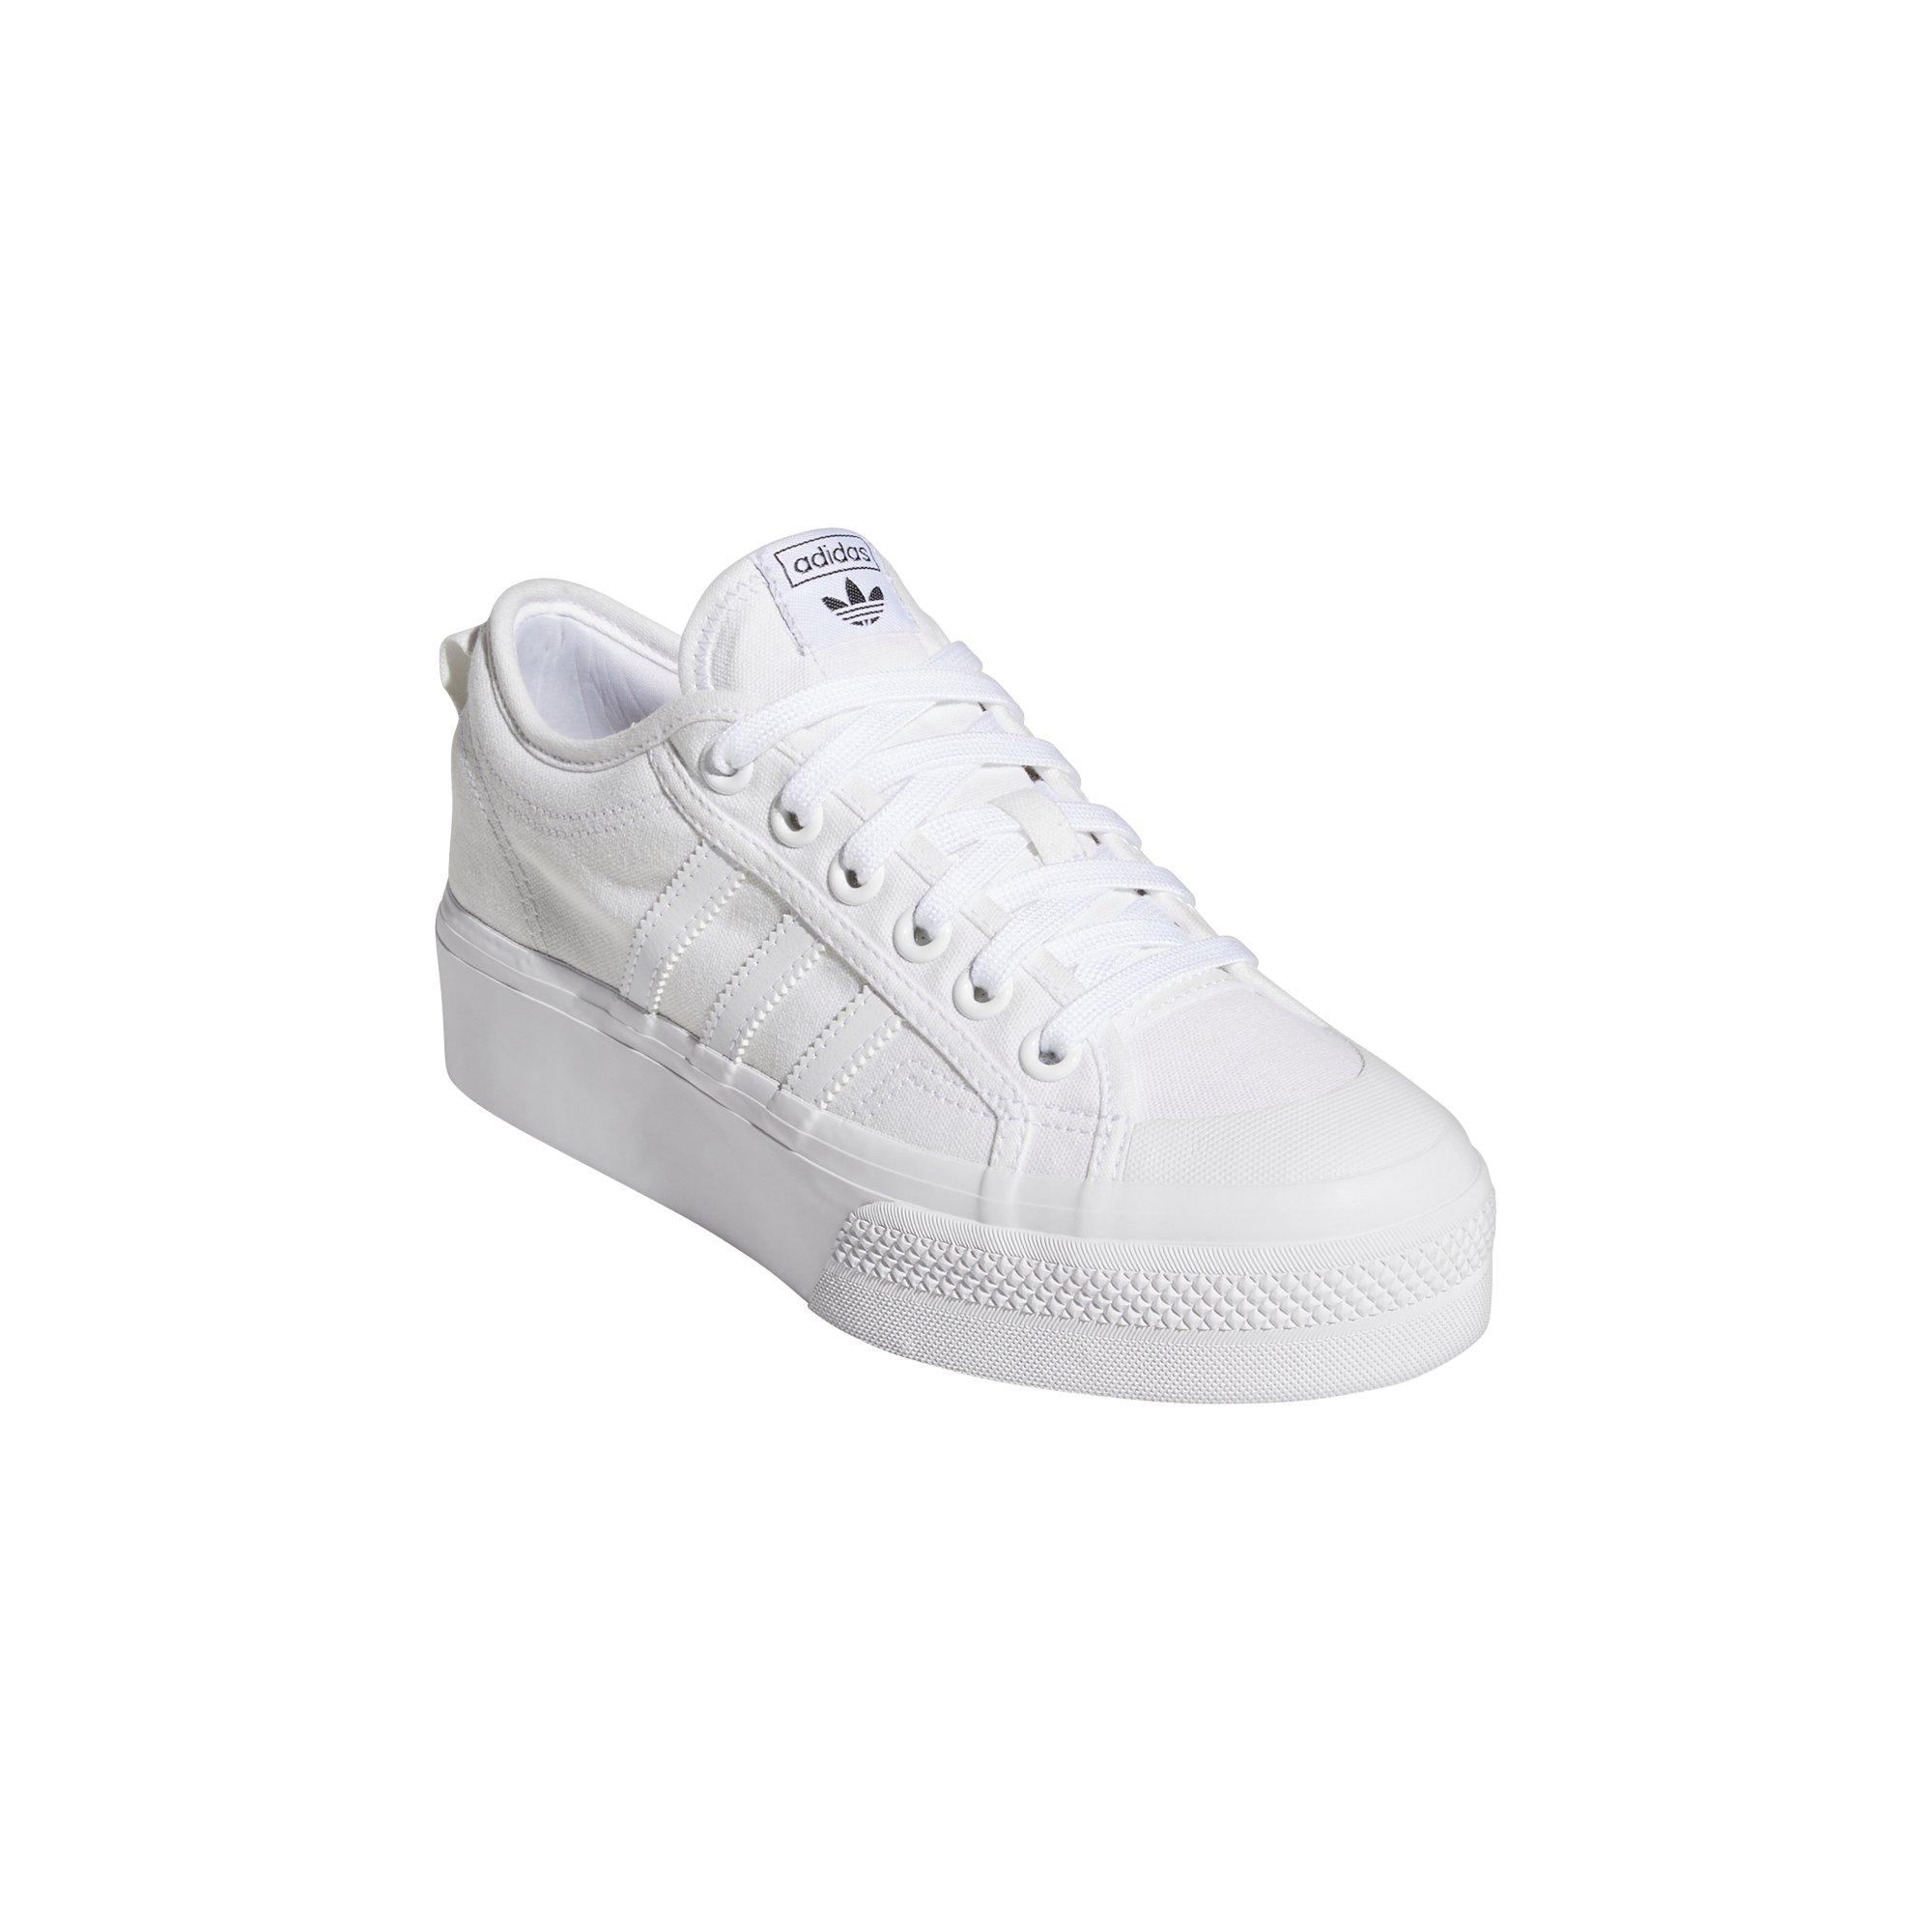 Bothersome Eloquent Fern adidas Originals Nizza Platform "White" Women's Shoe - Hibbett | City Gear